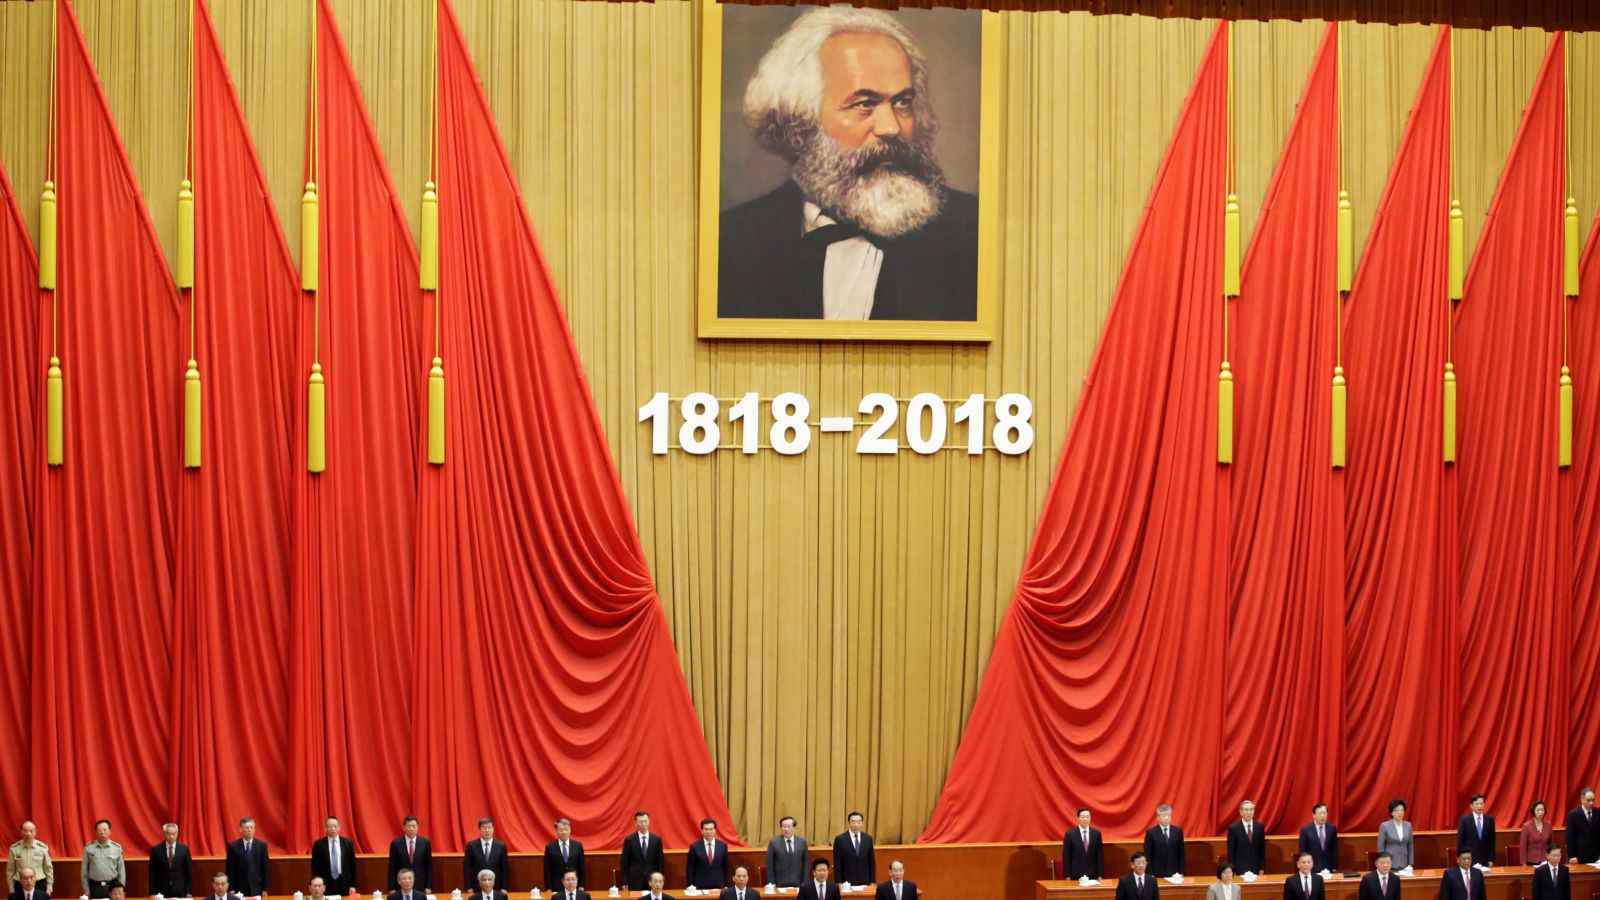 Xi Jinping: Stick to Karl Marx’s True Path